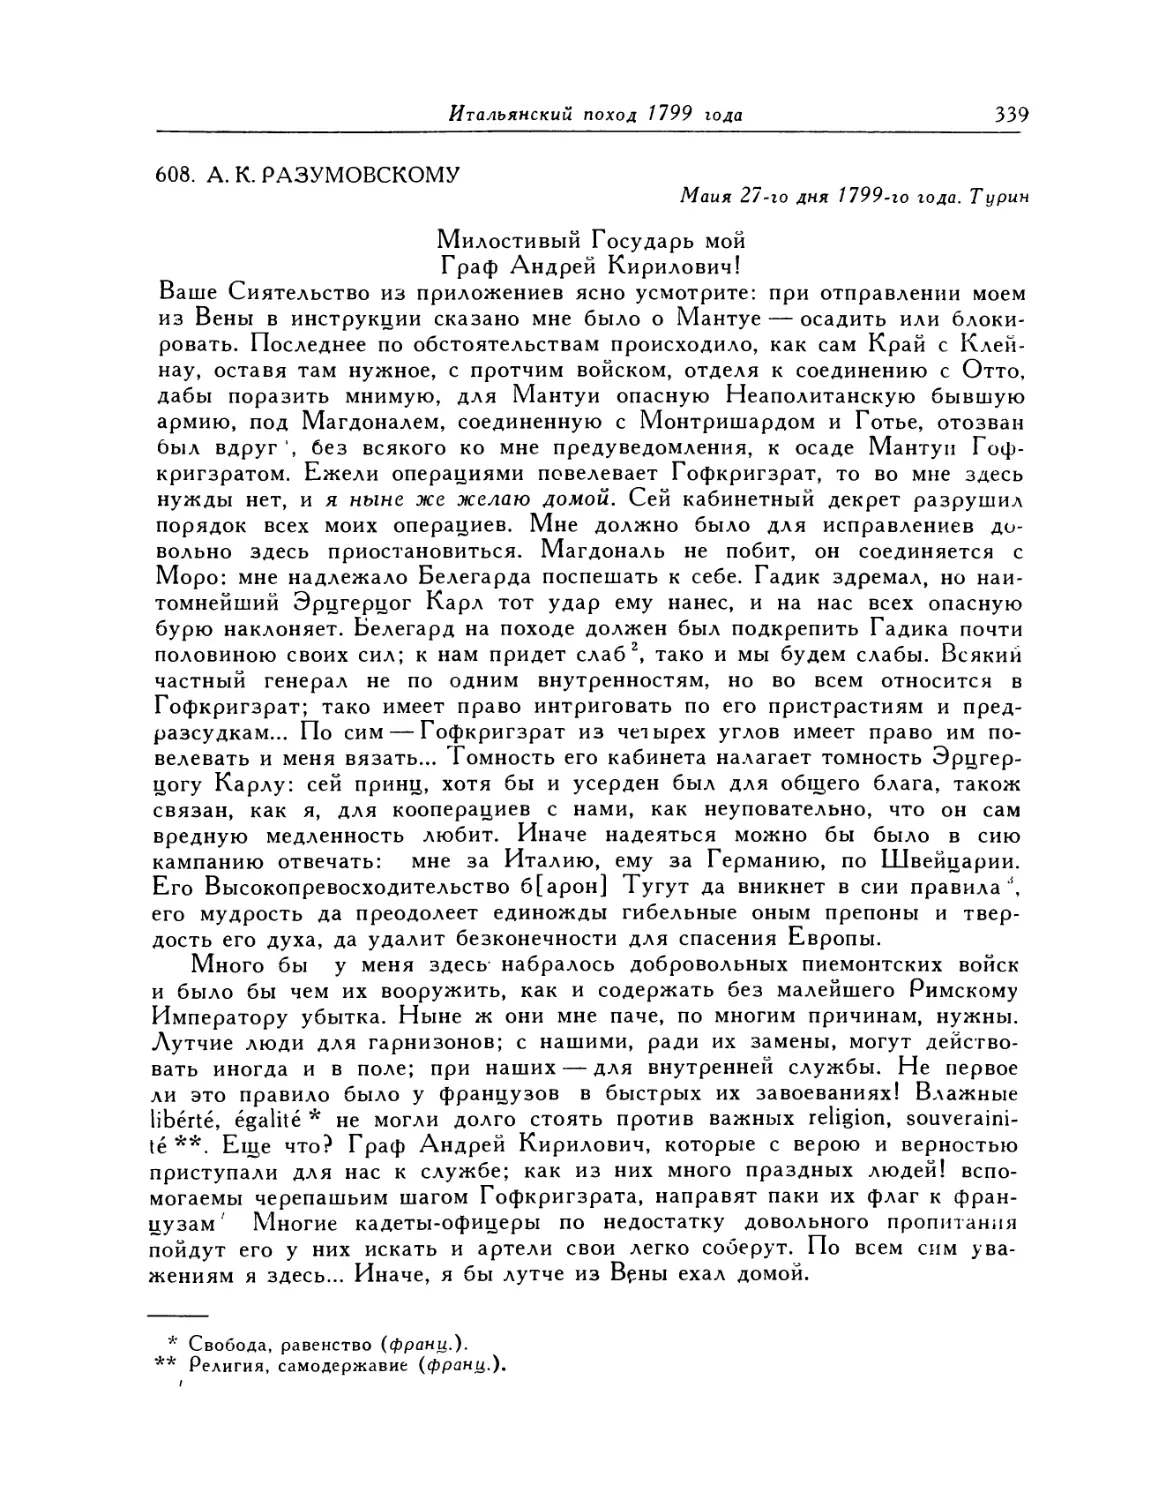 608. А. К. Разумовскому. 27.V.1799